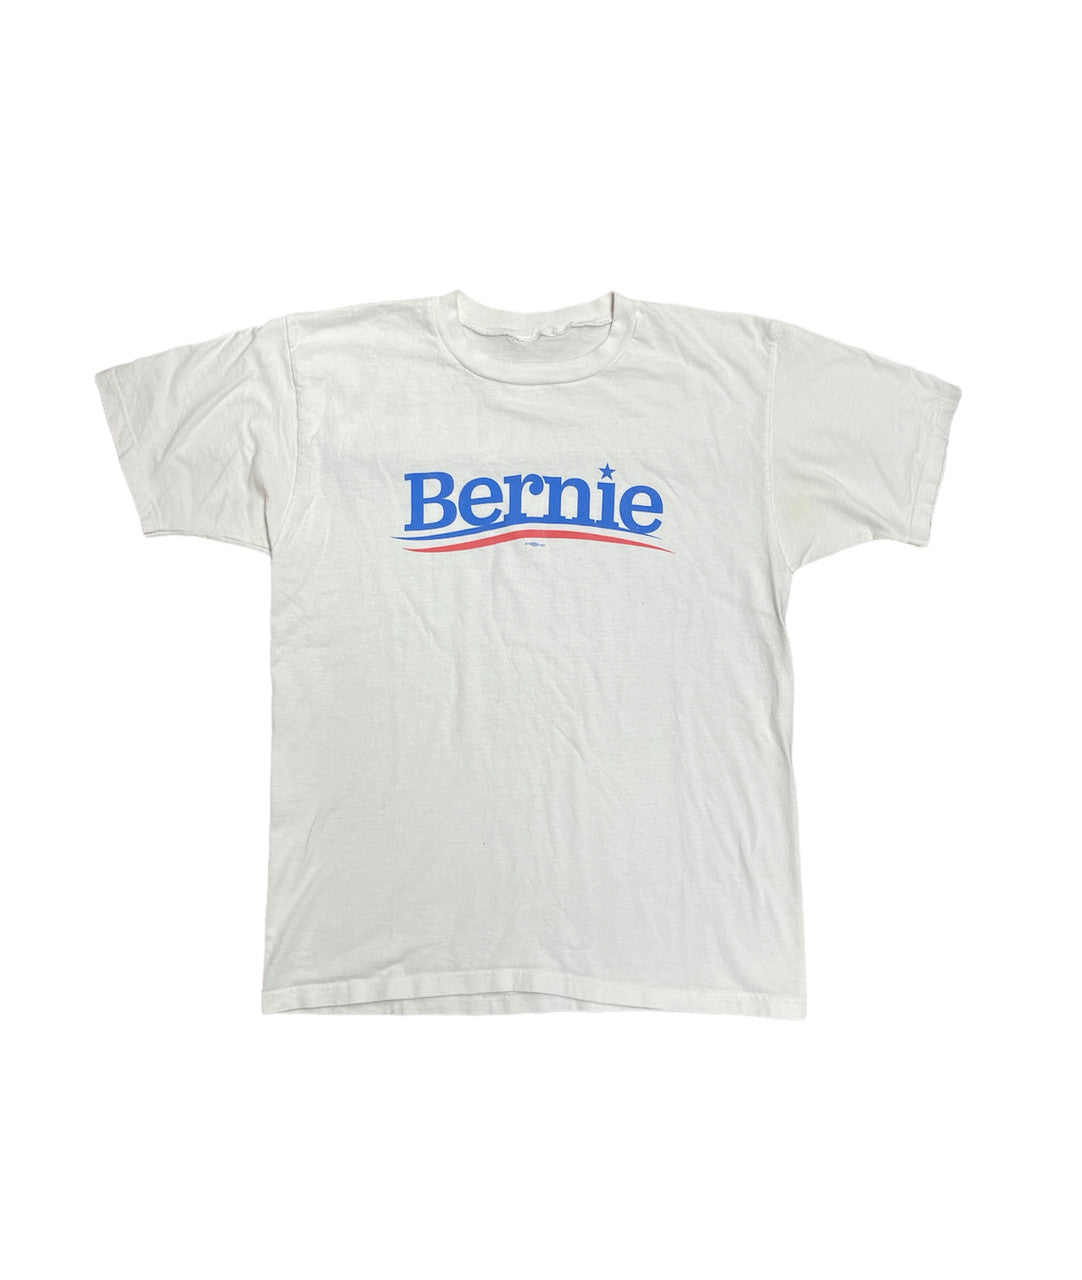 Bernie Tshirt